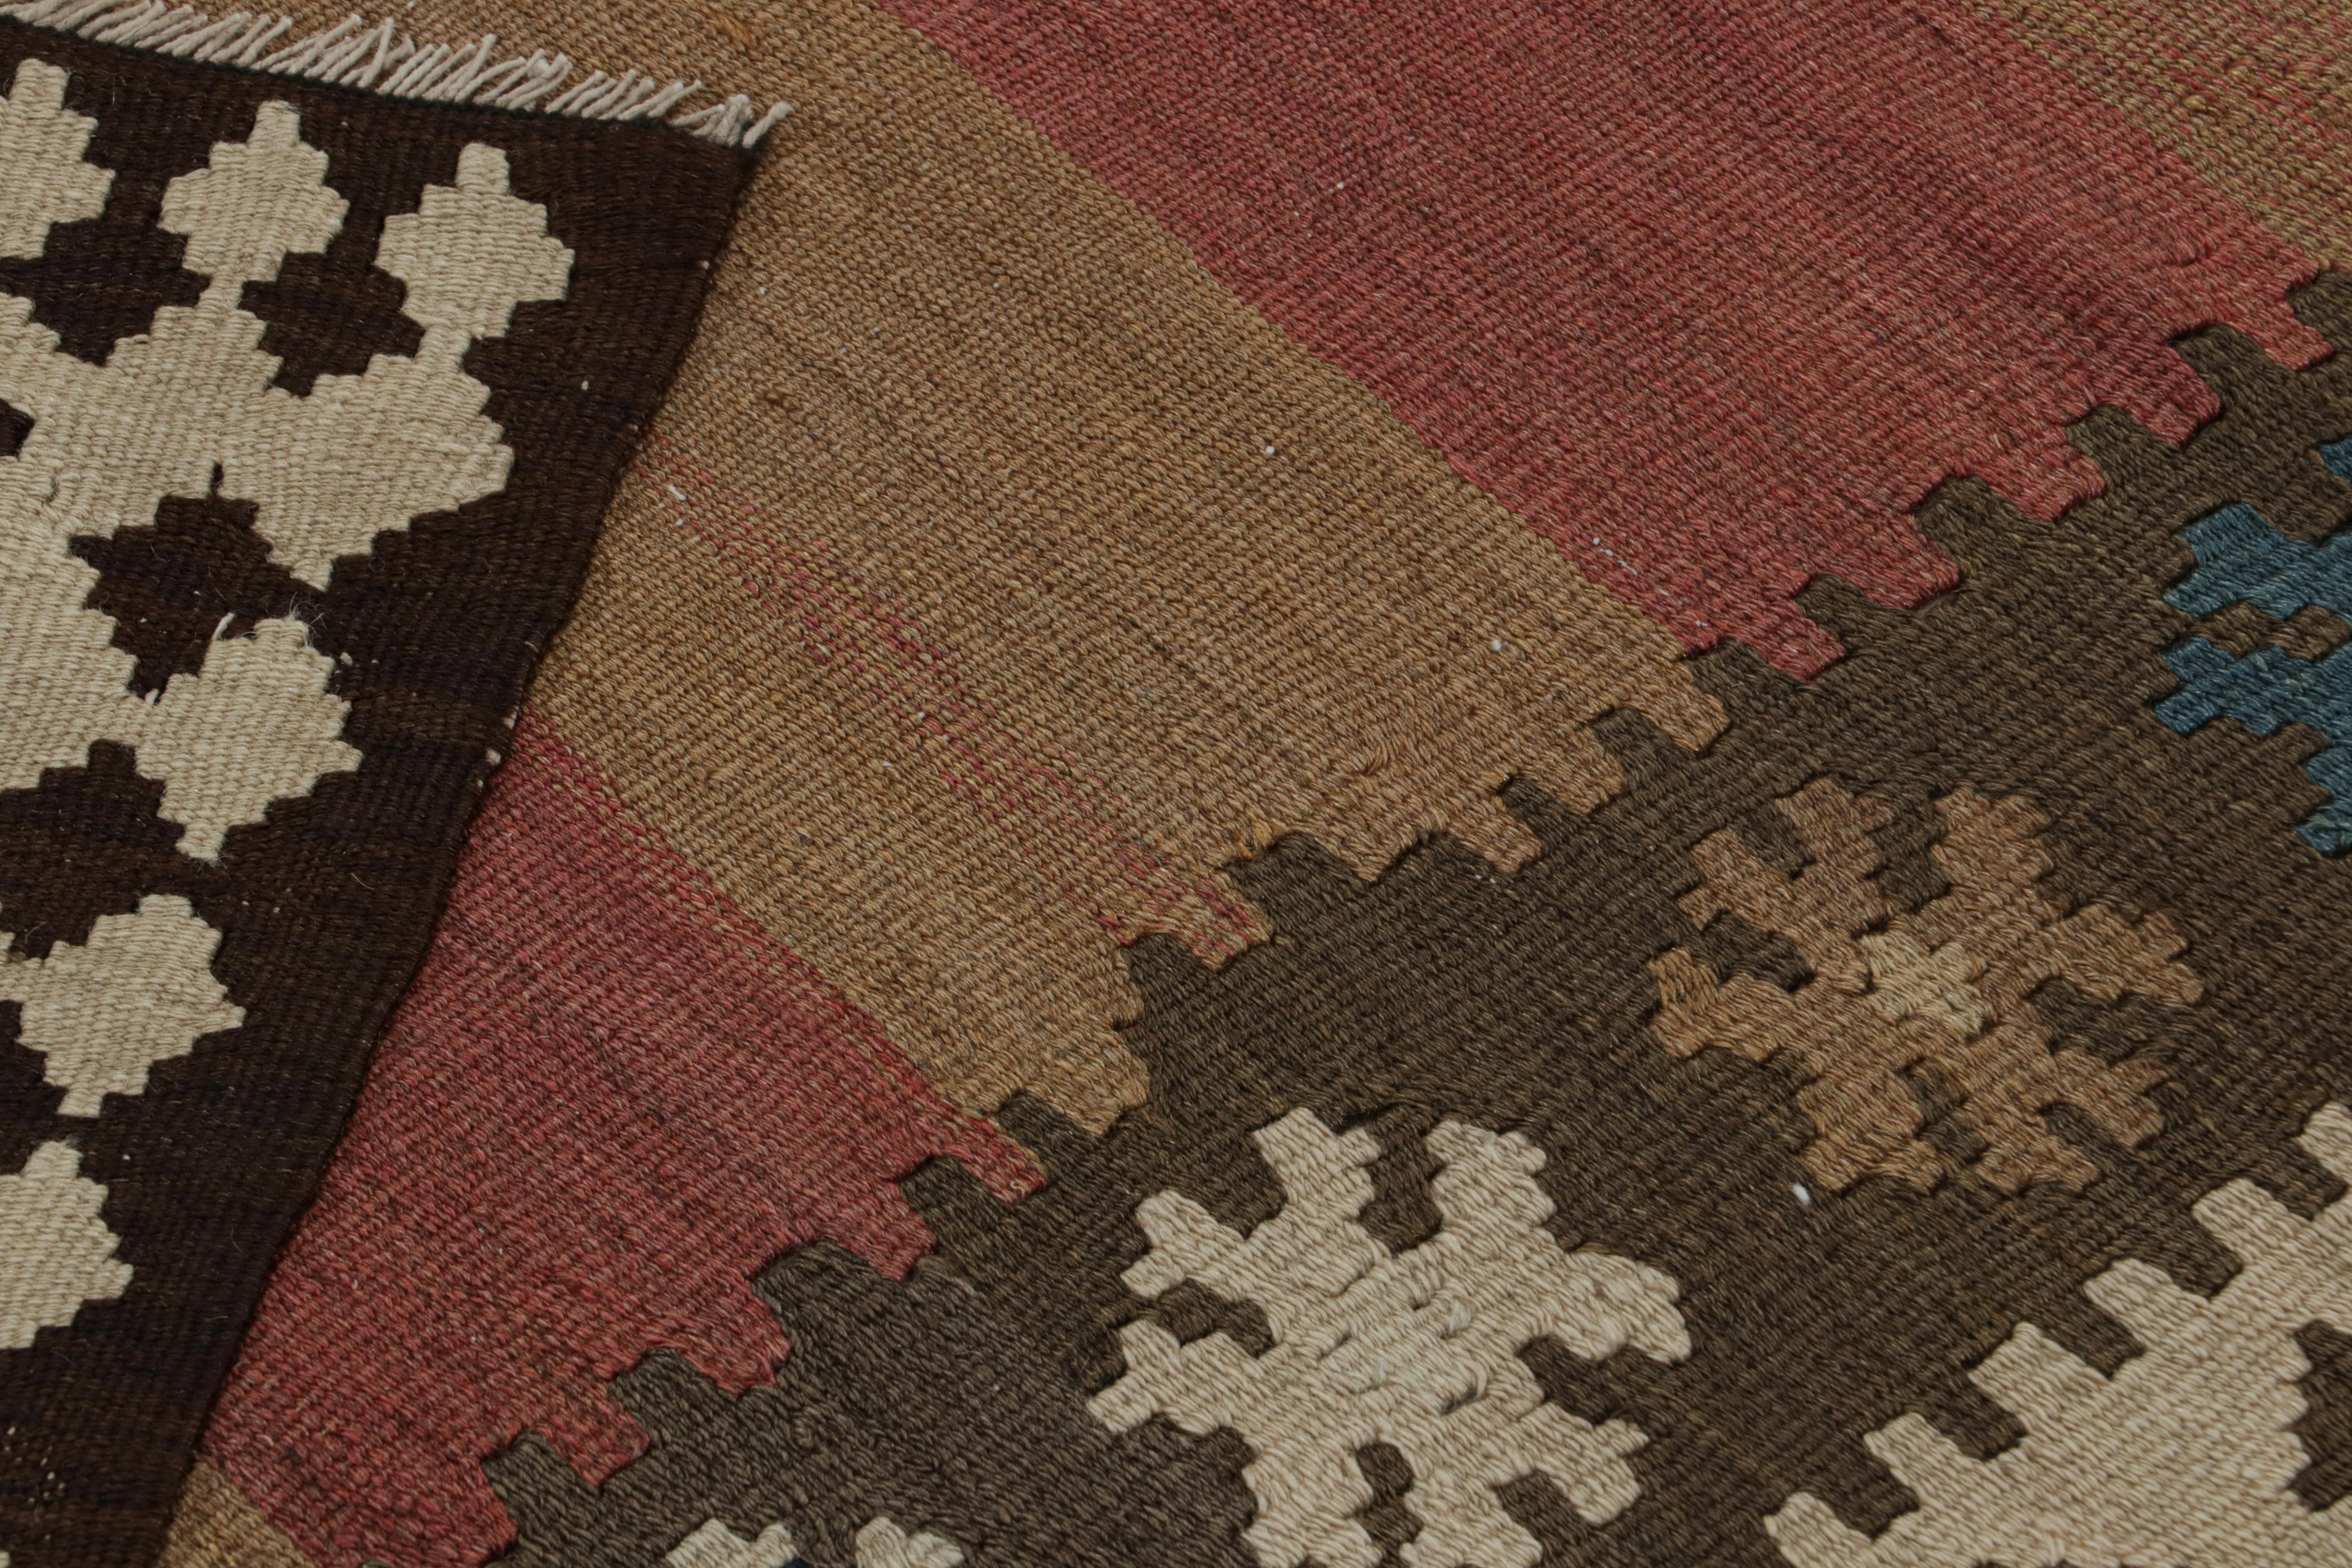 Wool Vintage Persian Kilim rug in Brown, Red & Blue Tribal Patterns by Rug & Kilim For Sale